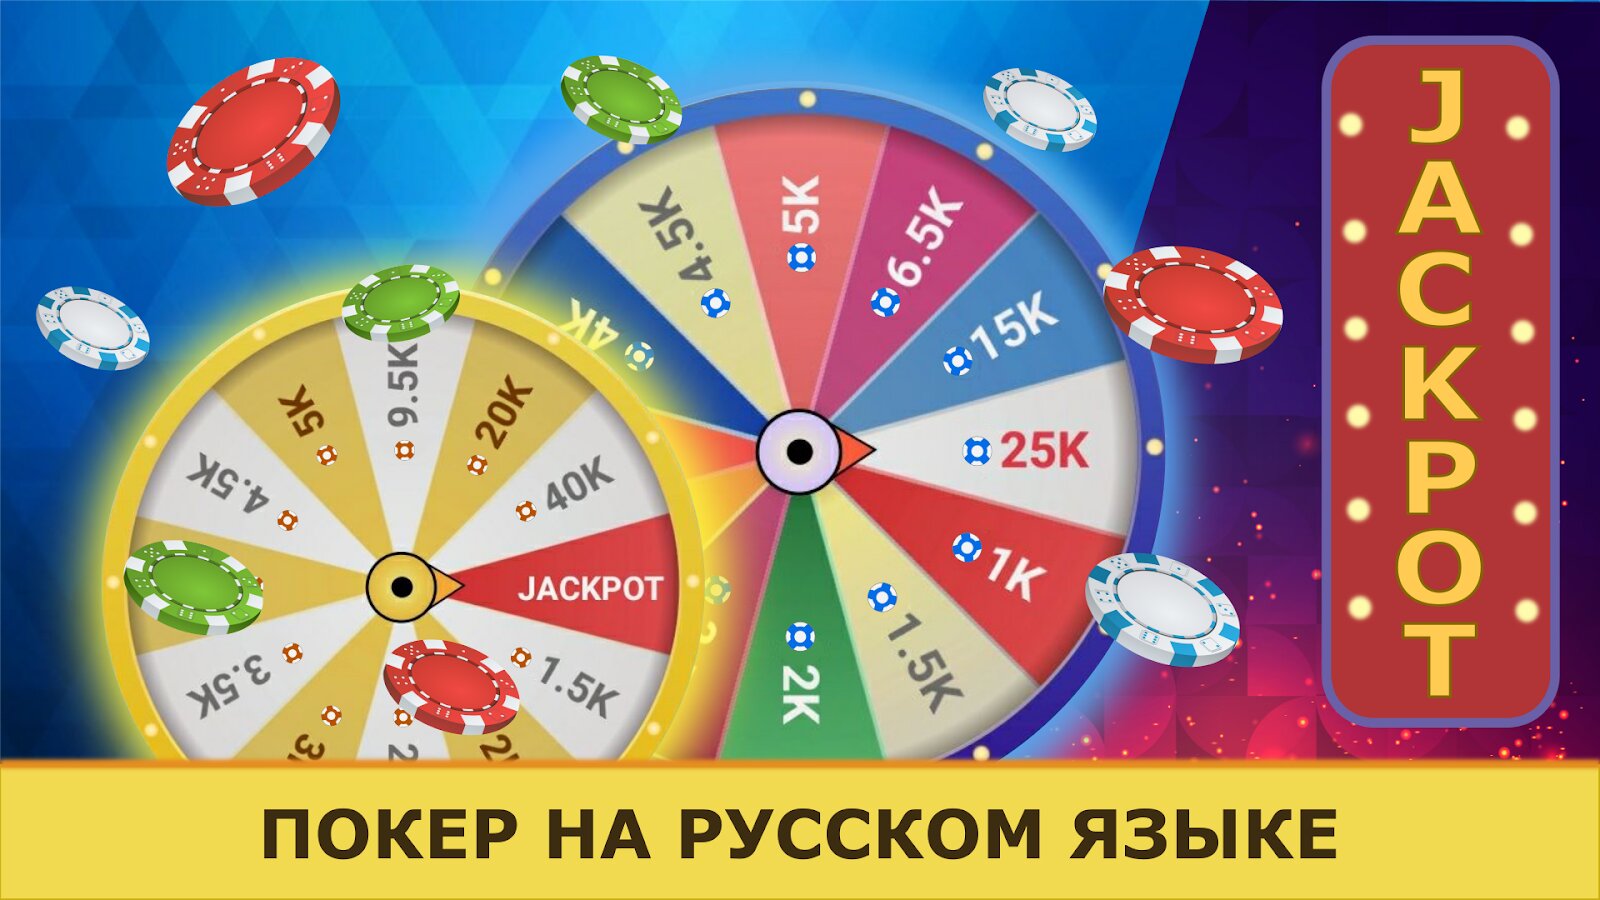 Скачать покер на андроид не онлайн на русском языке как играть в карту мира